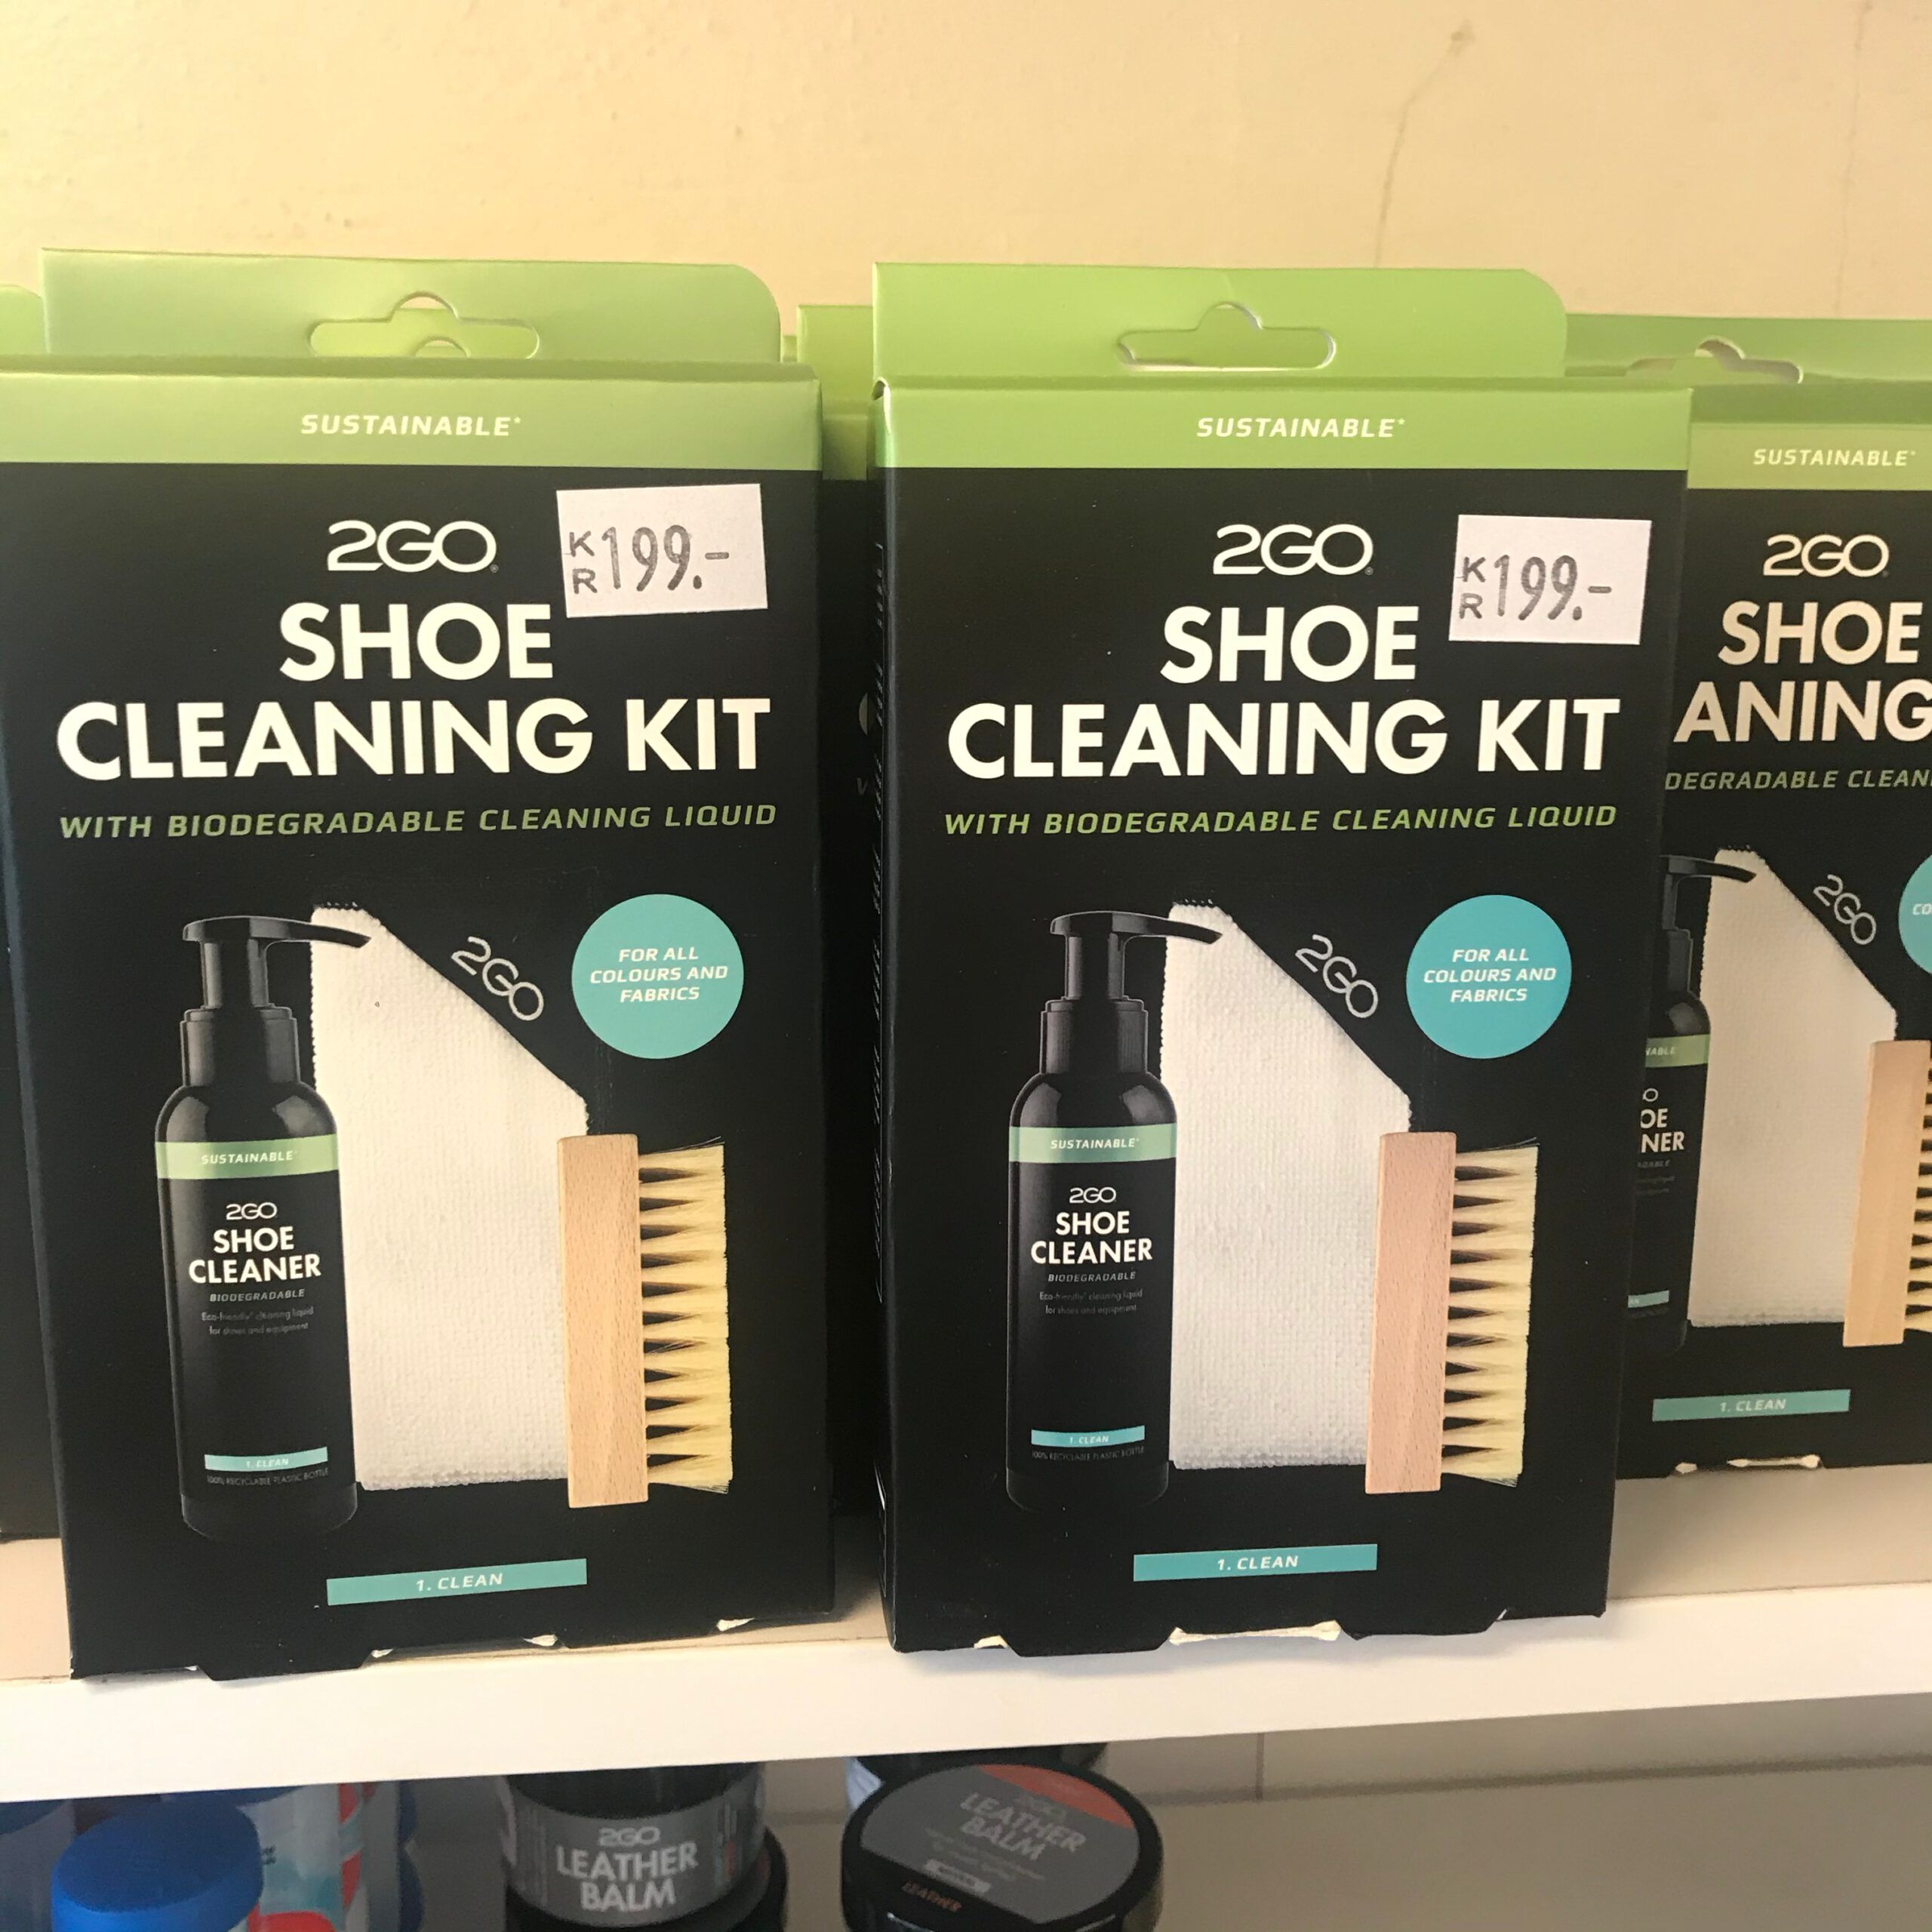 2GO Merker 2GO - Shoe cleaning kit 1